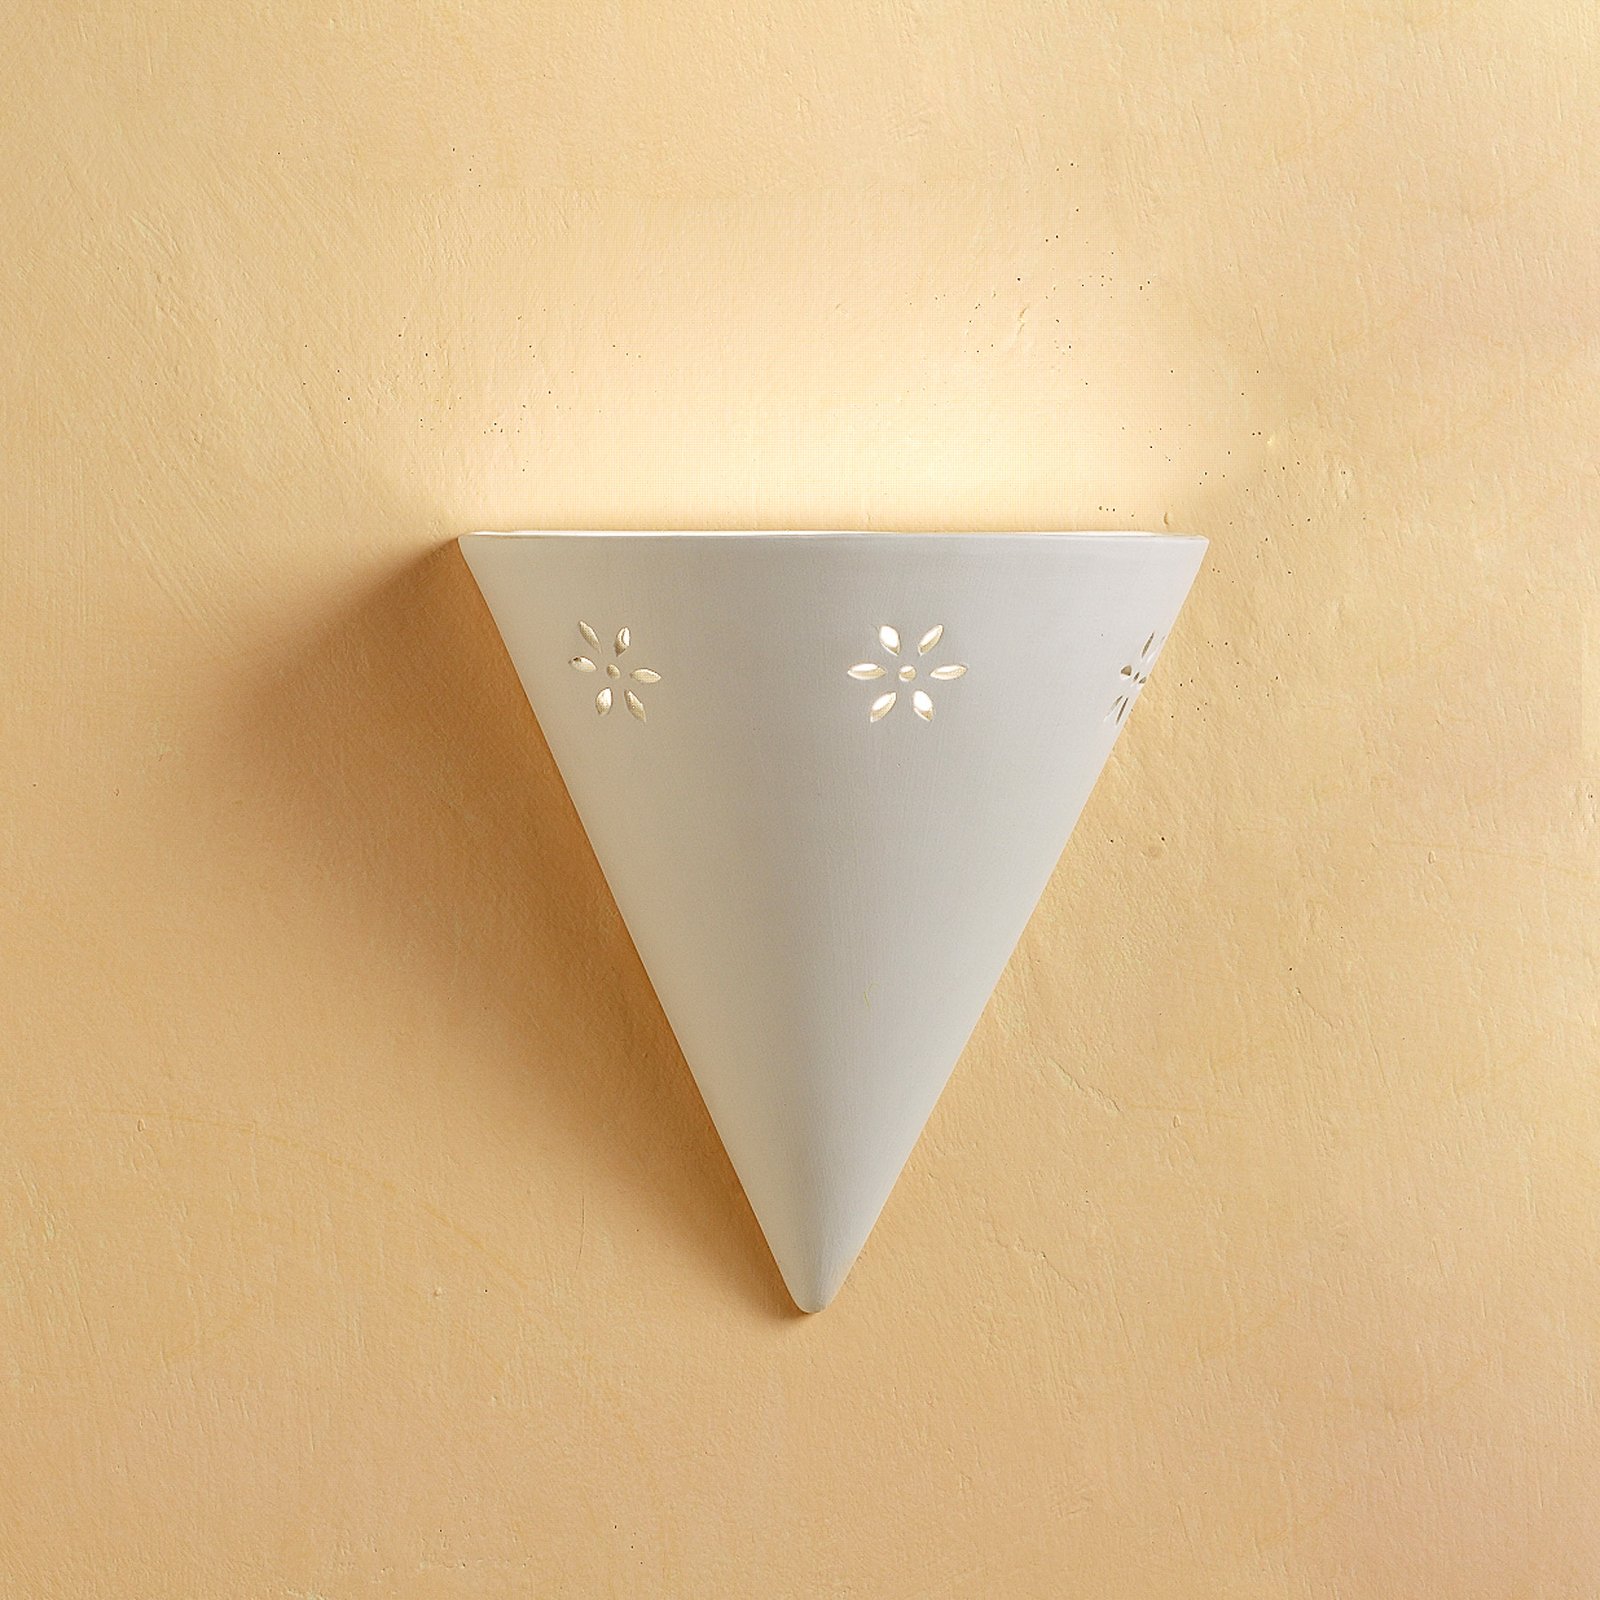 Elegant Cono wall light in white ceramic